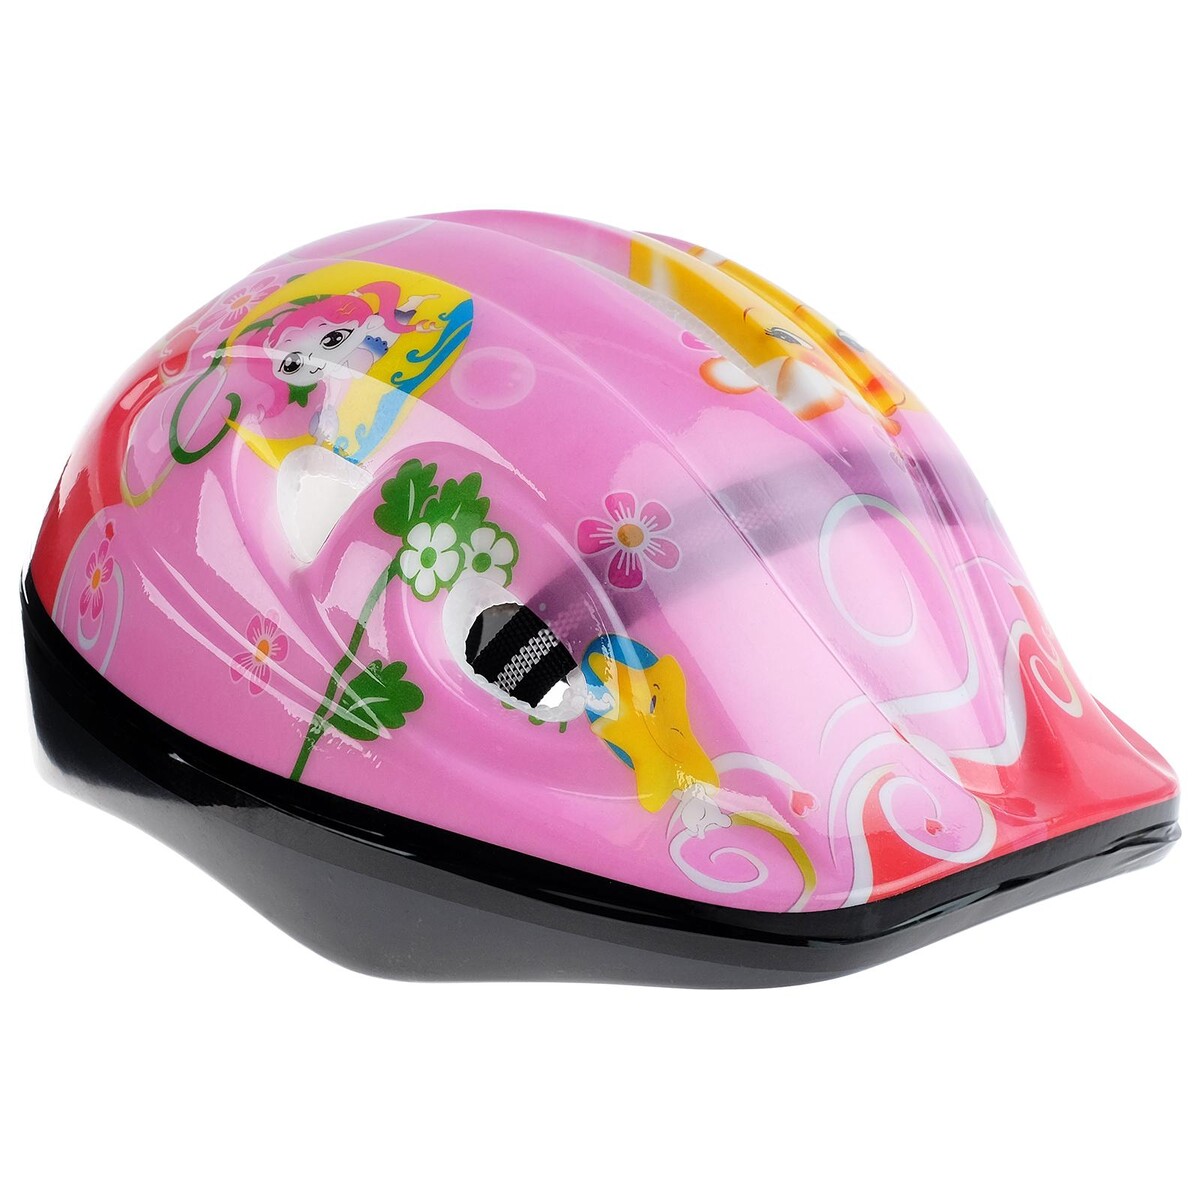 Шлем защитный детский onlytop ot-501, обхват 52-54 см, цвет розовый шлем детский lassie р s цв фиолетовые полосы 718729 4921 s